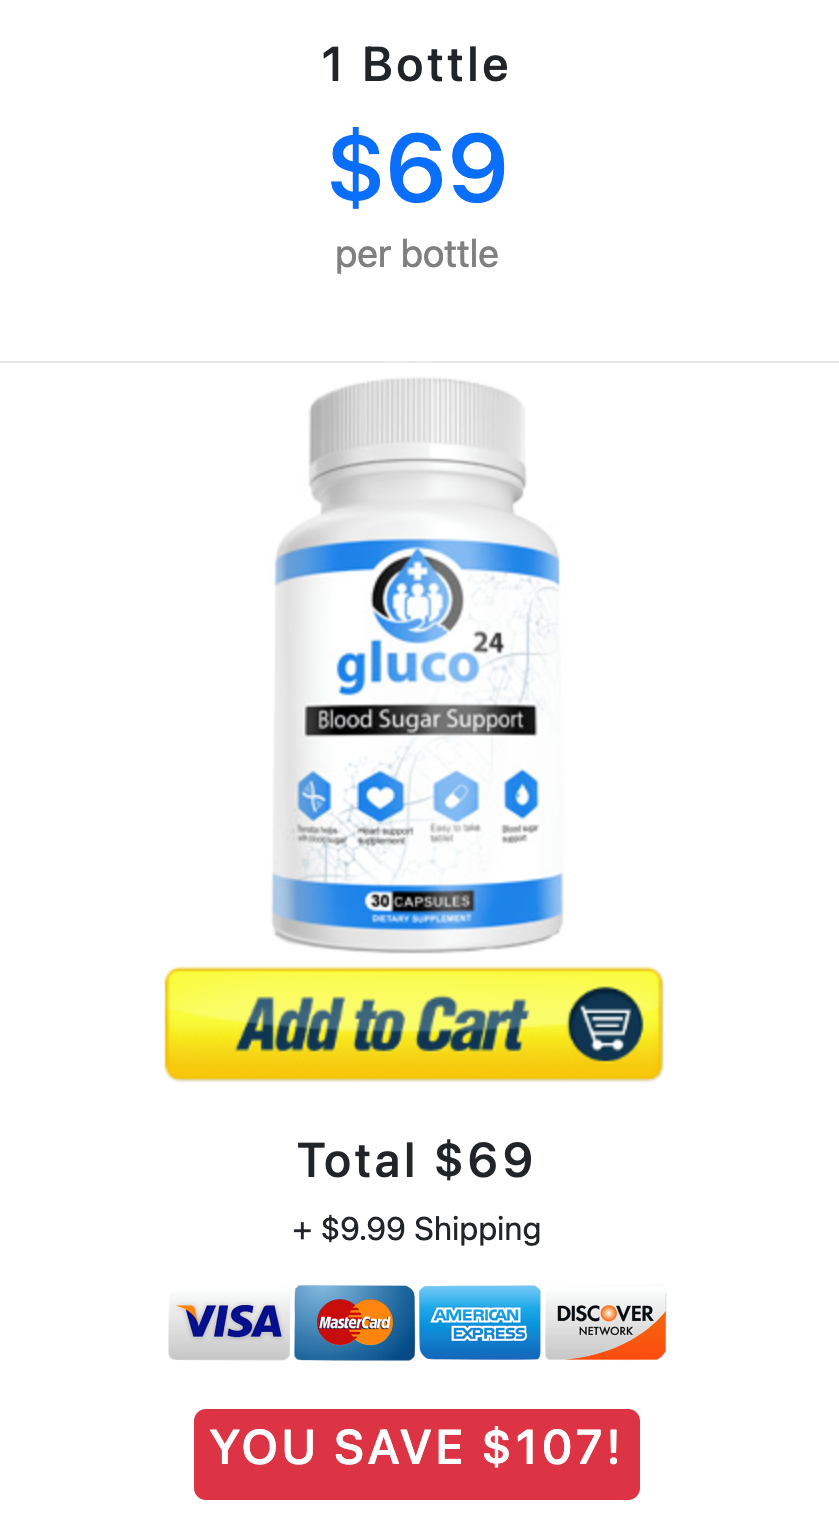 Gluco24 - 1 Bottle